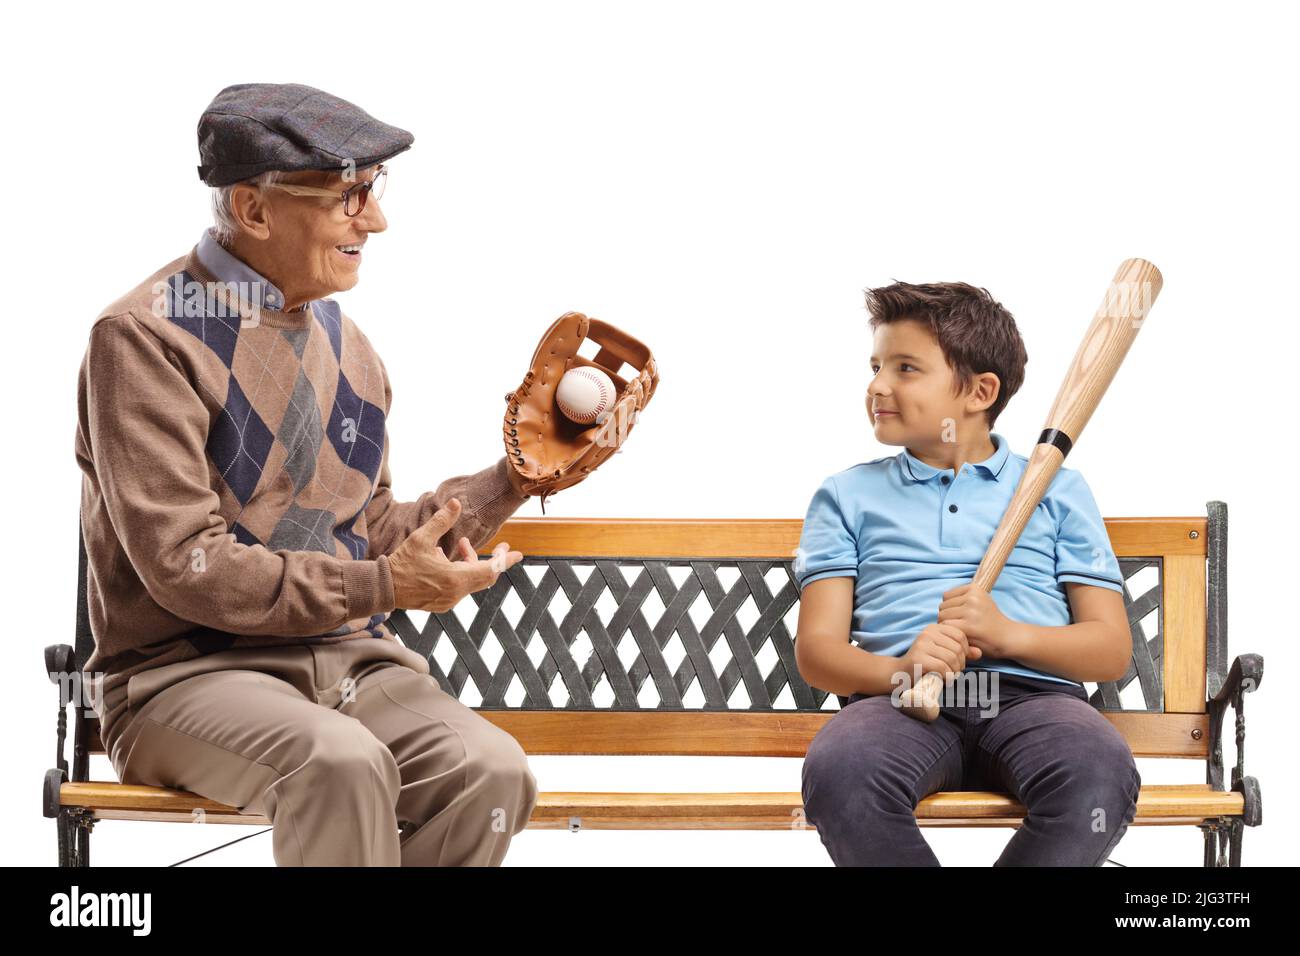 Grand-père avec un gant de baseball et une balle parlant à un garçon et assis sur un banc isolé sur fond blanc Banque D'Images